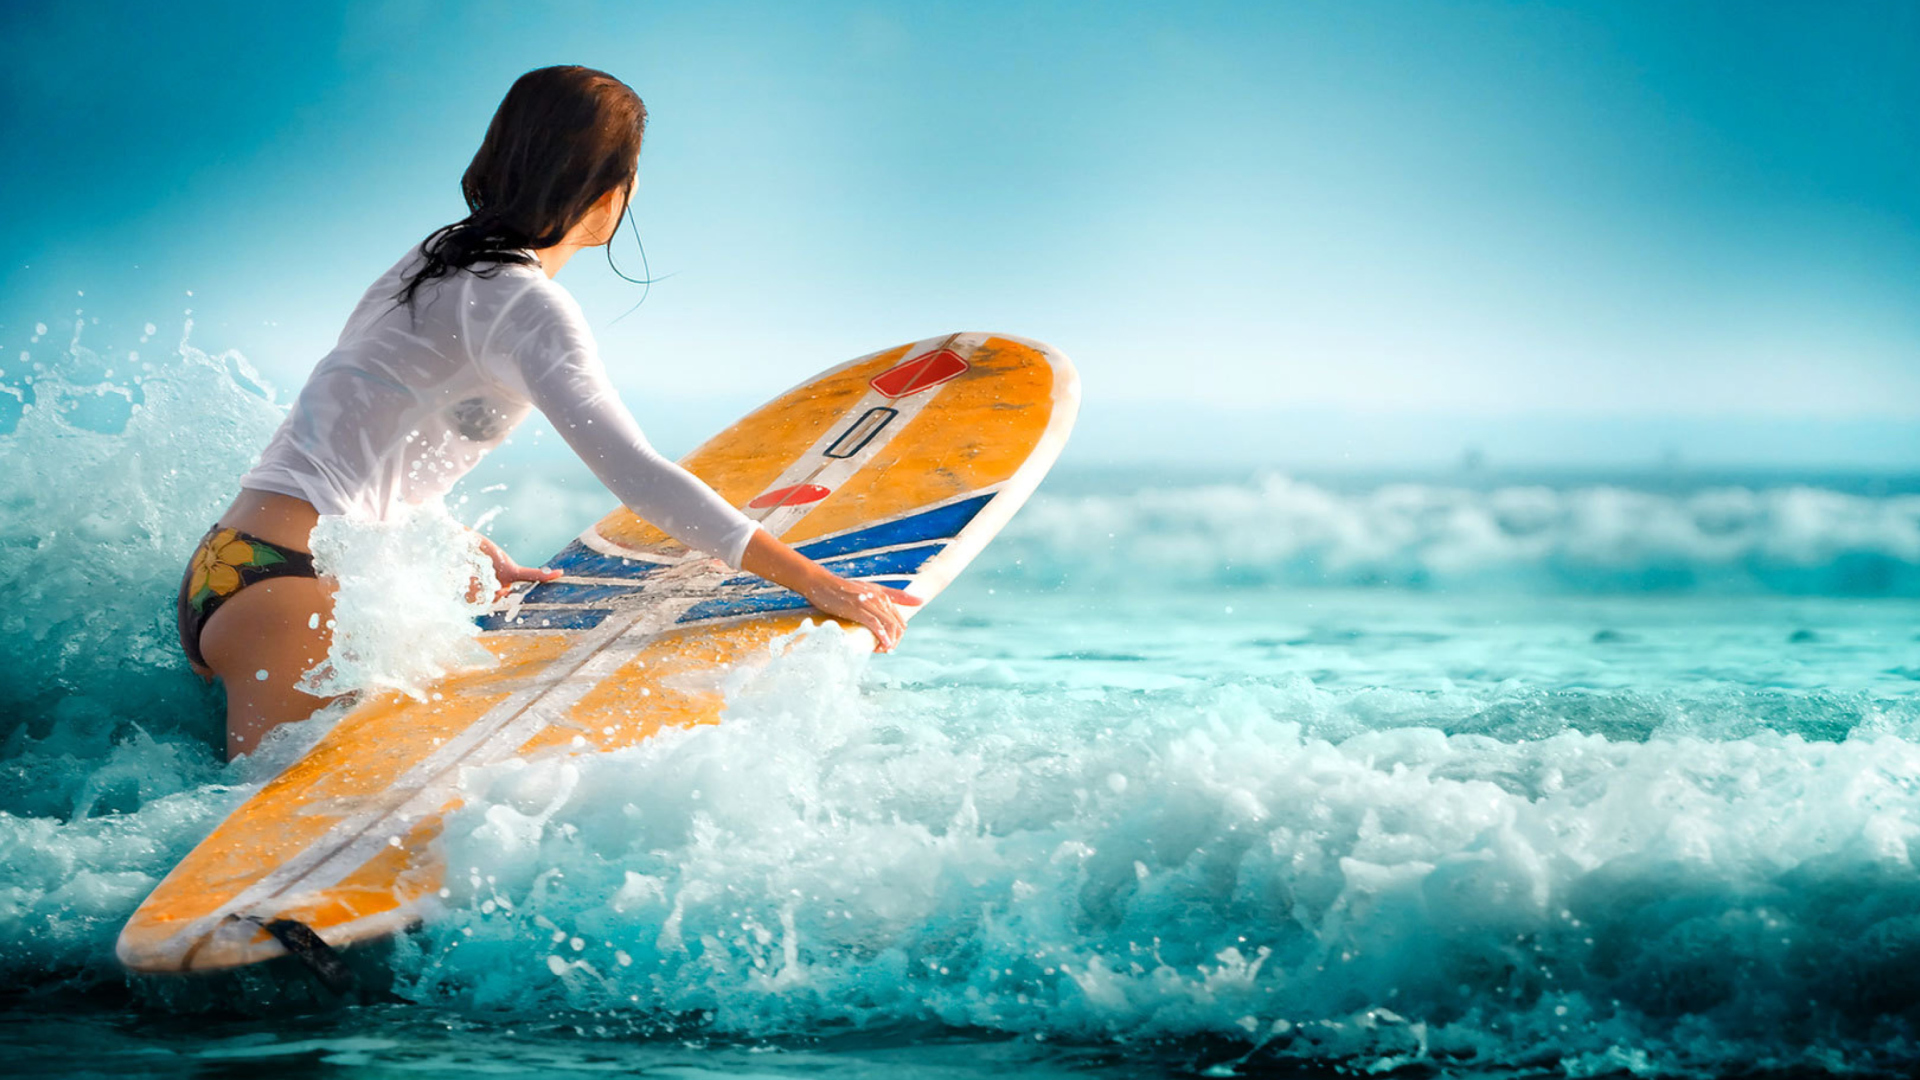 Обои Surfing Girl 1920x1080